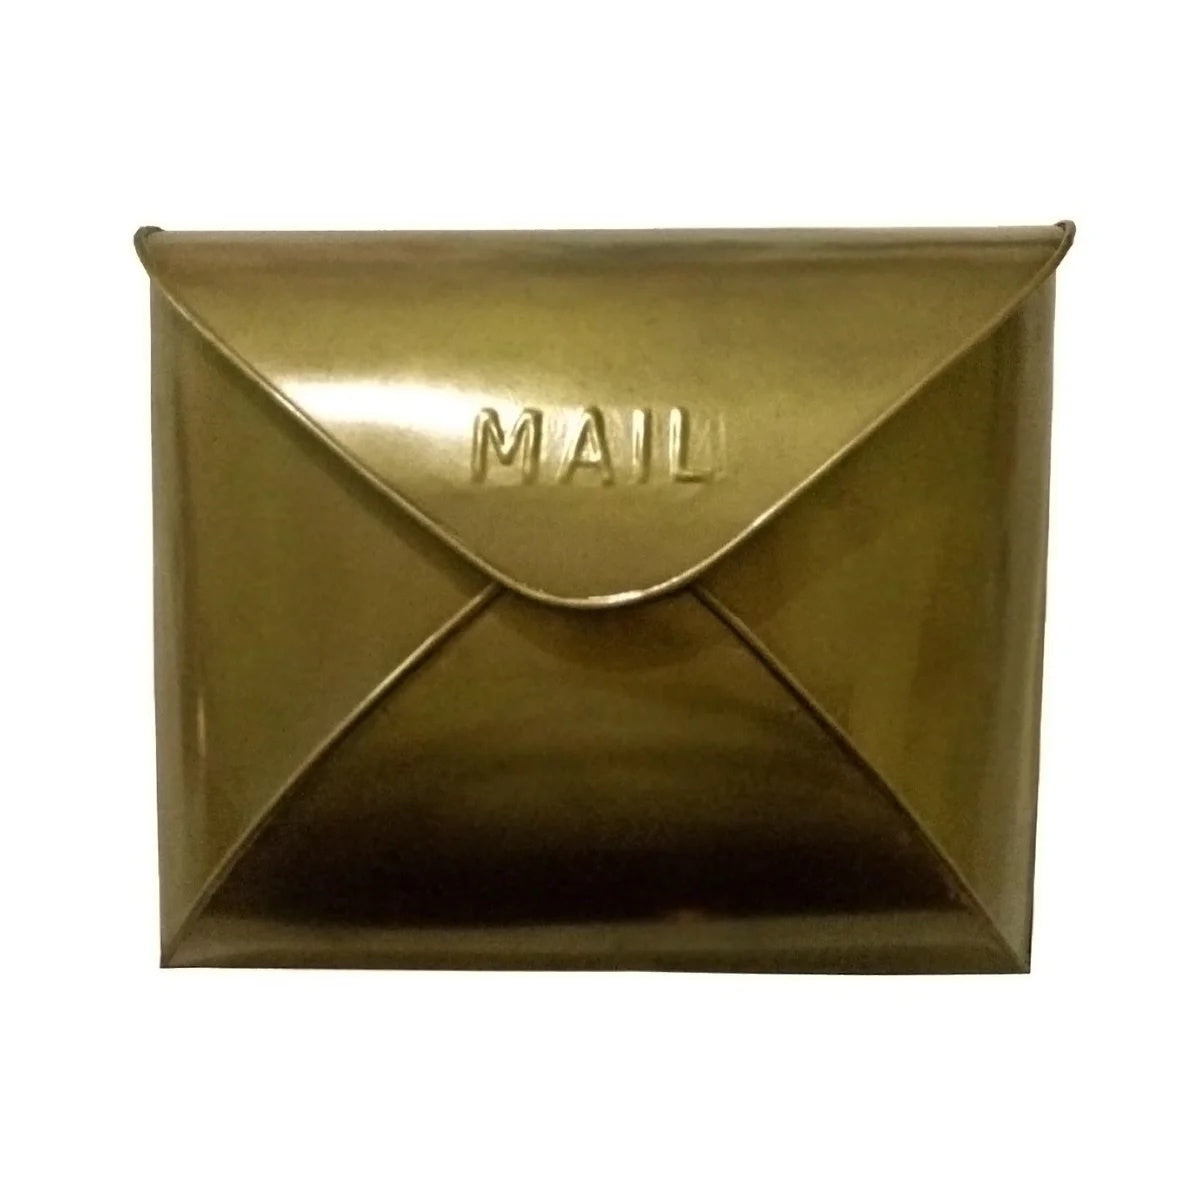 Antique brass envelop mailbox